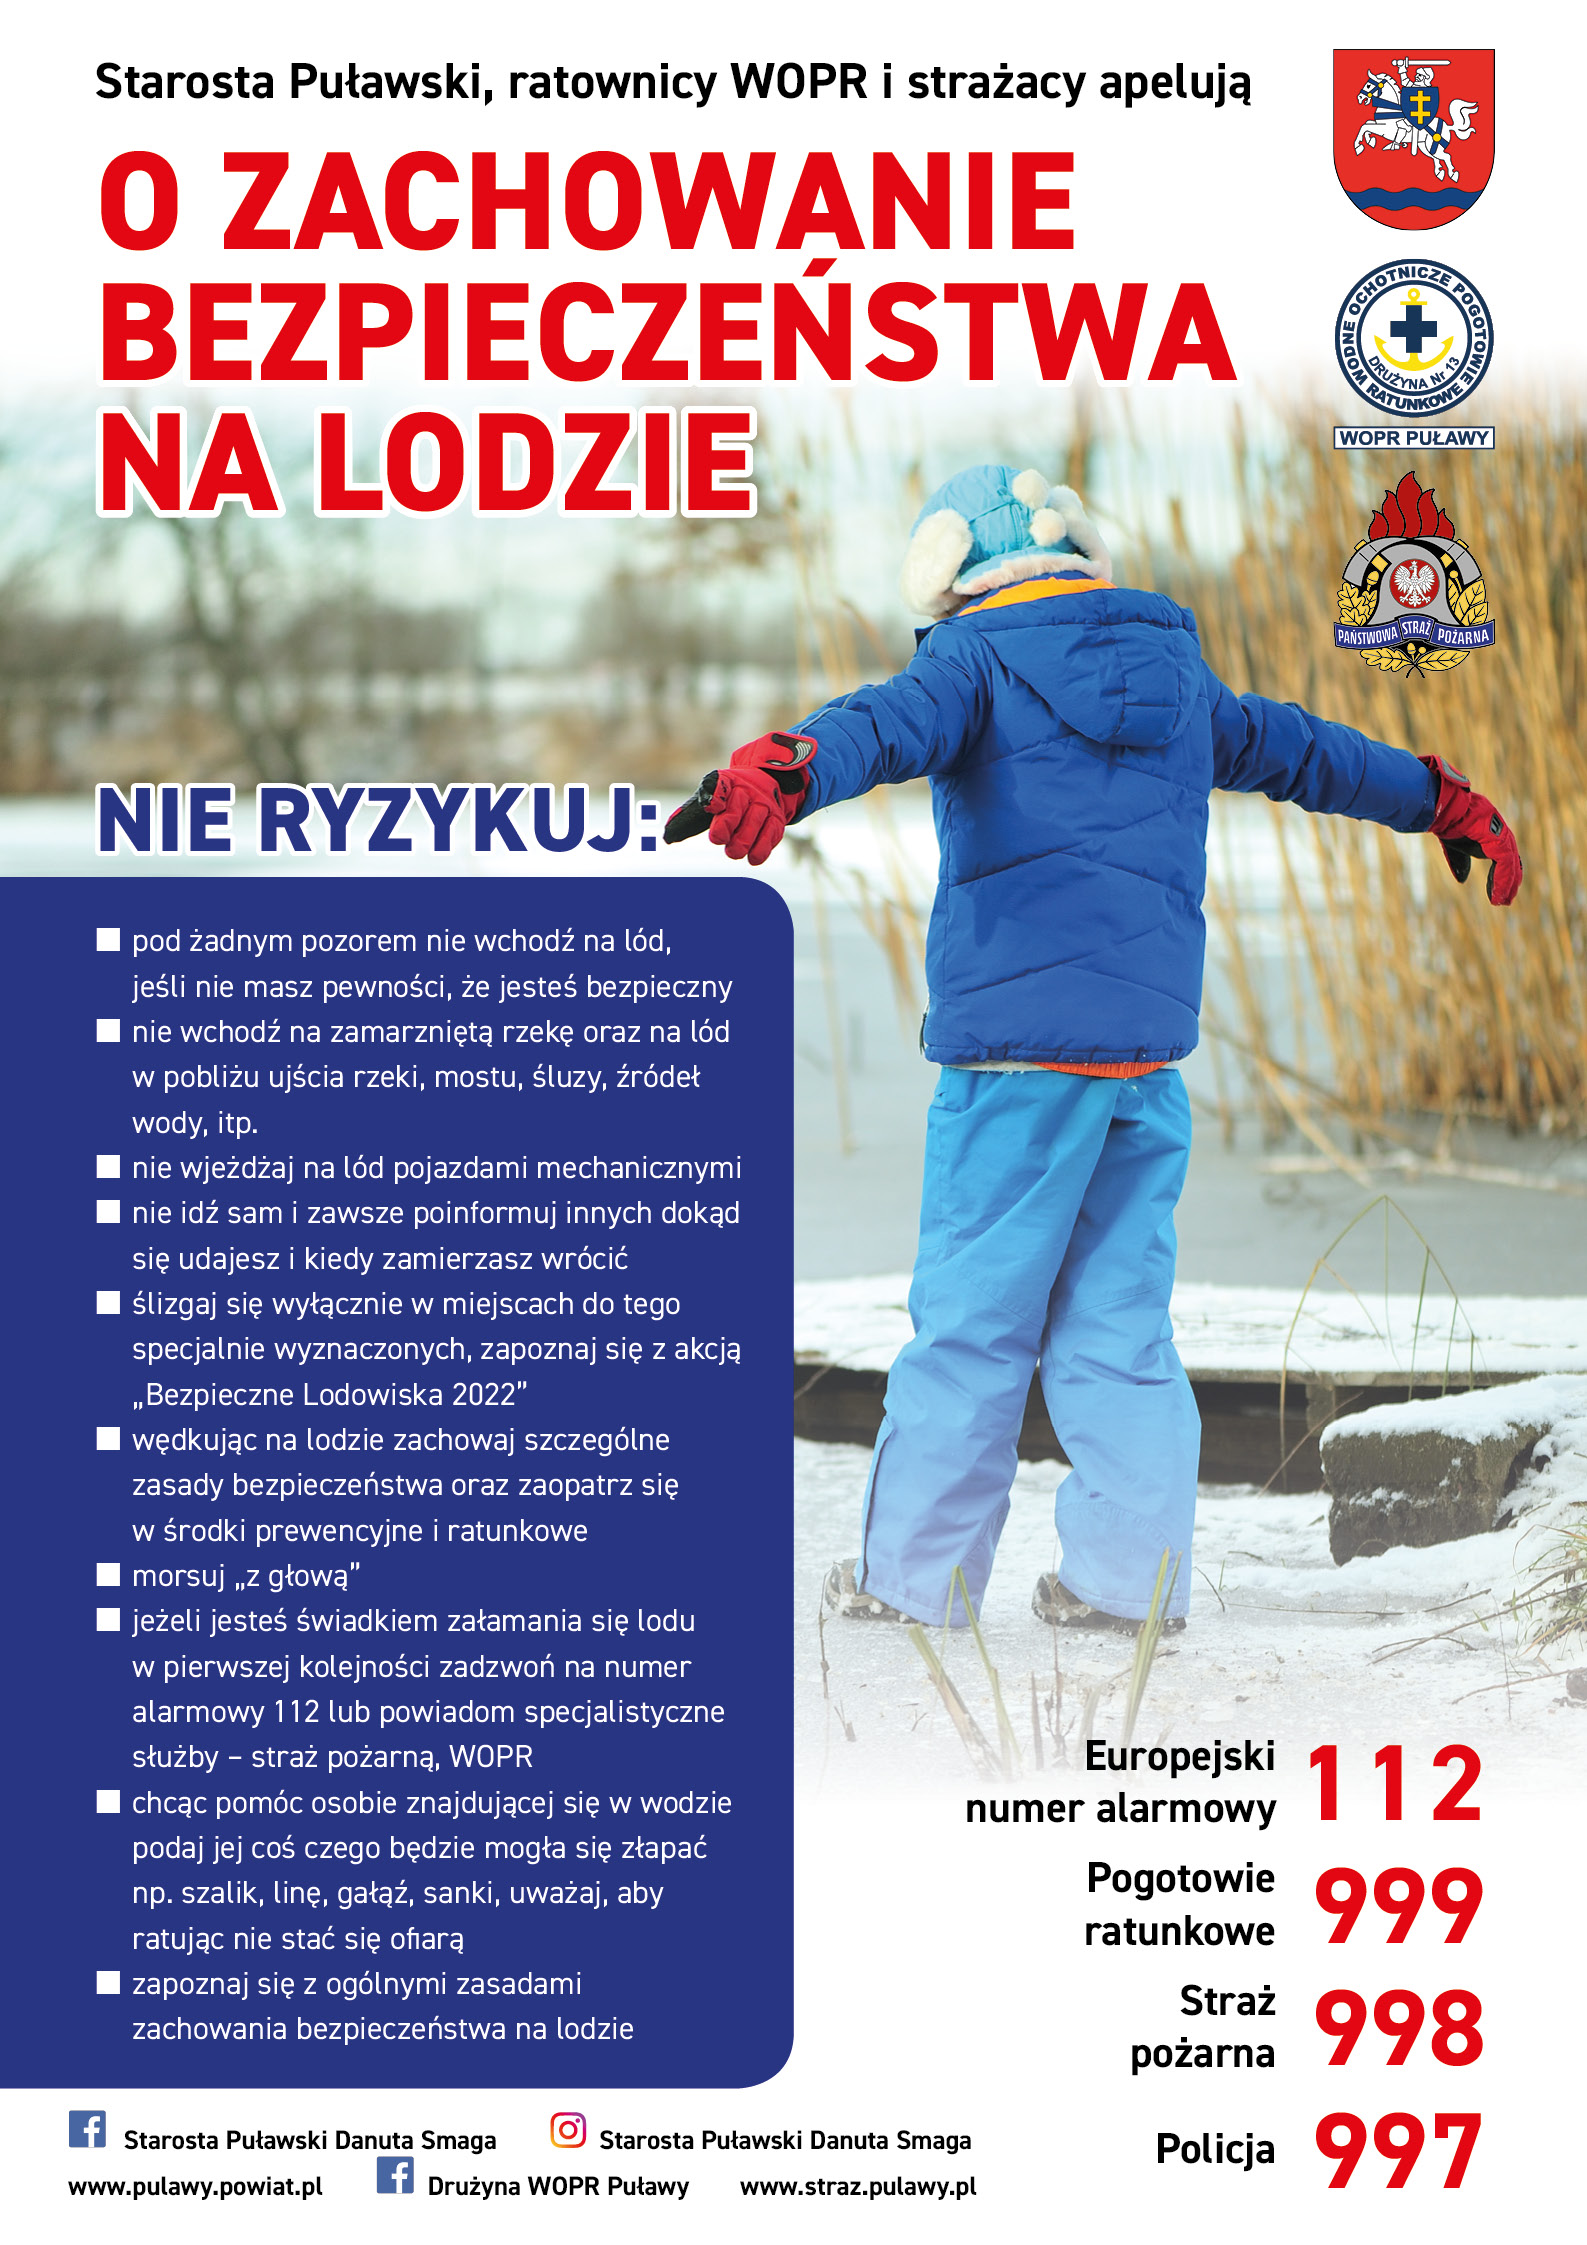 Zdjęcie prezentuje plakat promujący bezpiecznie zachowanie na lodzie.